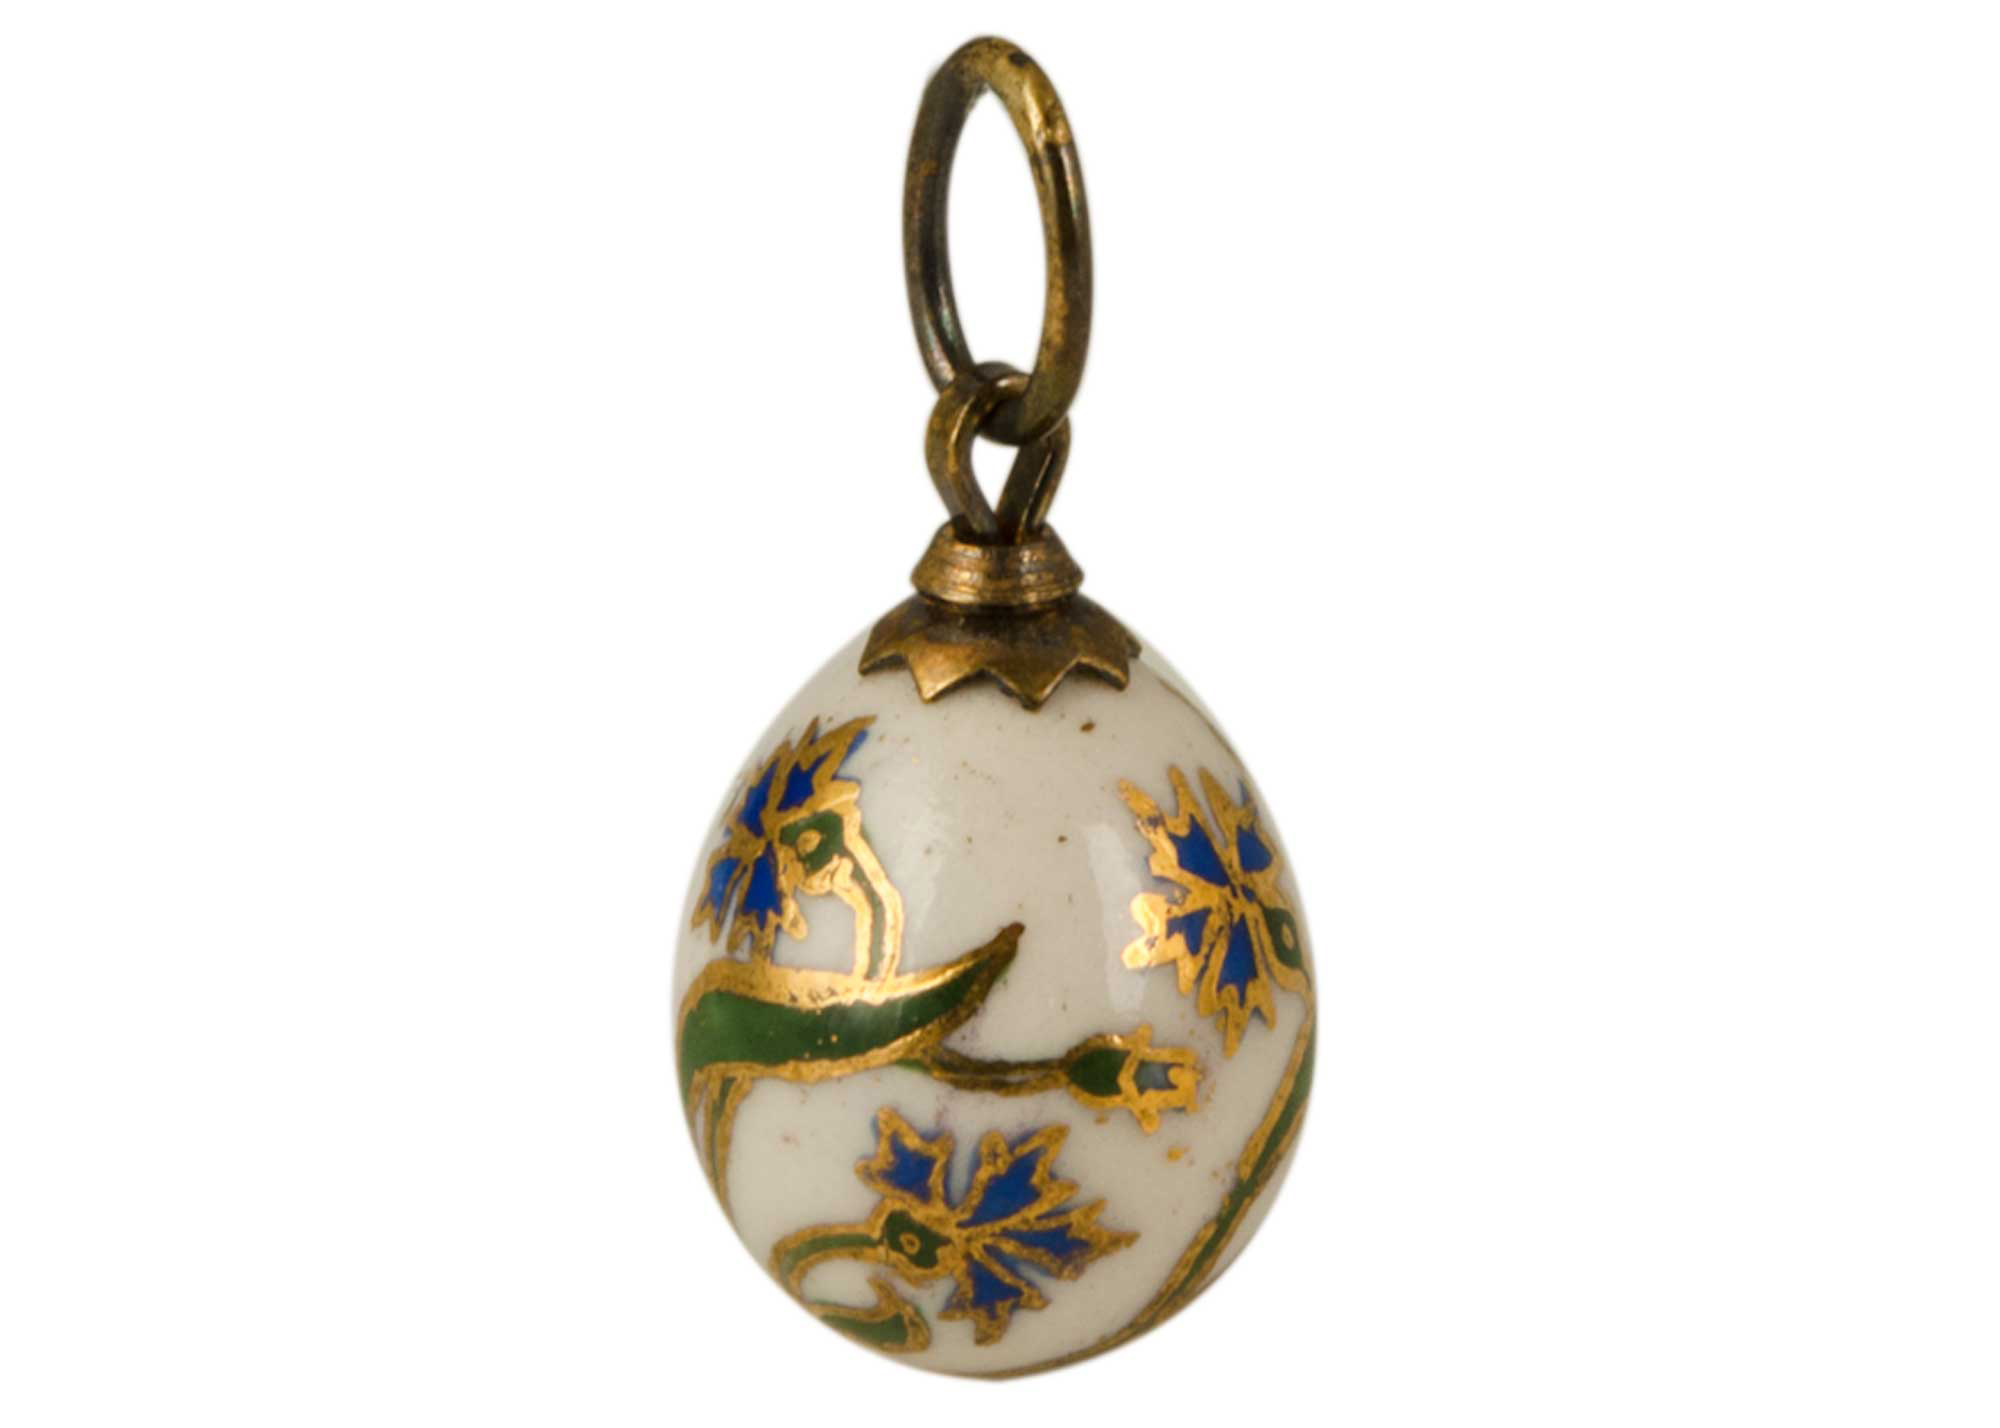 Buy Cornflower Porcelain Pendant at GoldenCockerel.com